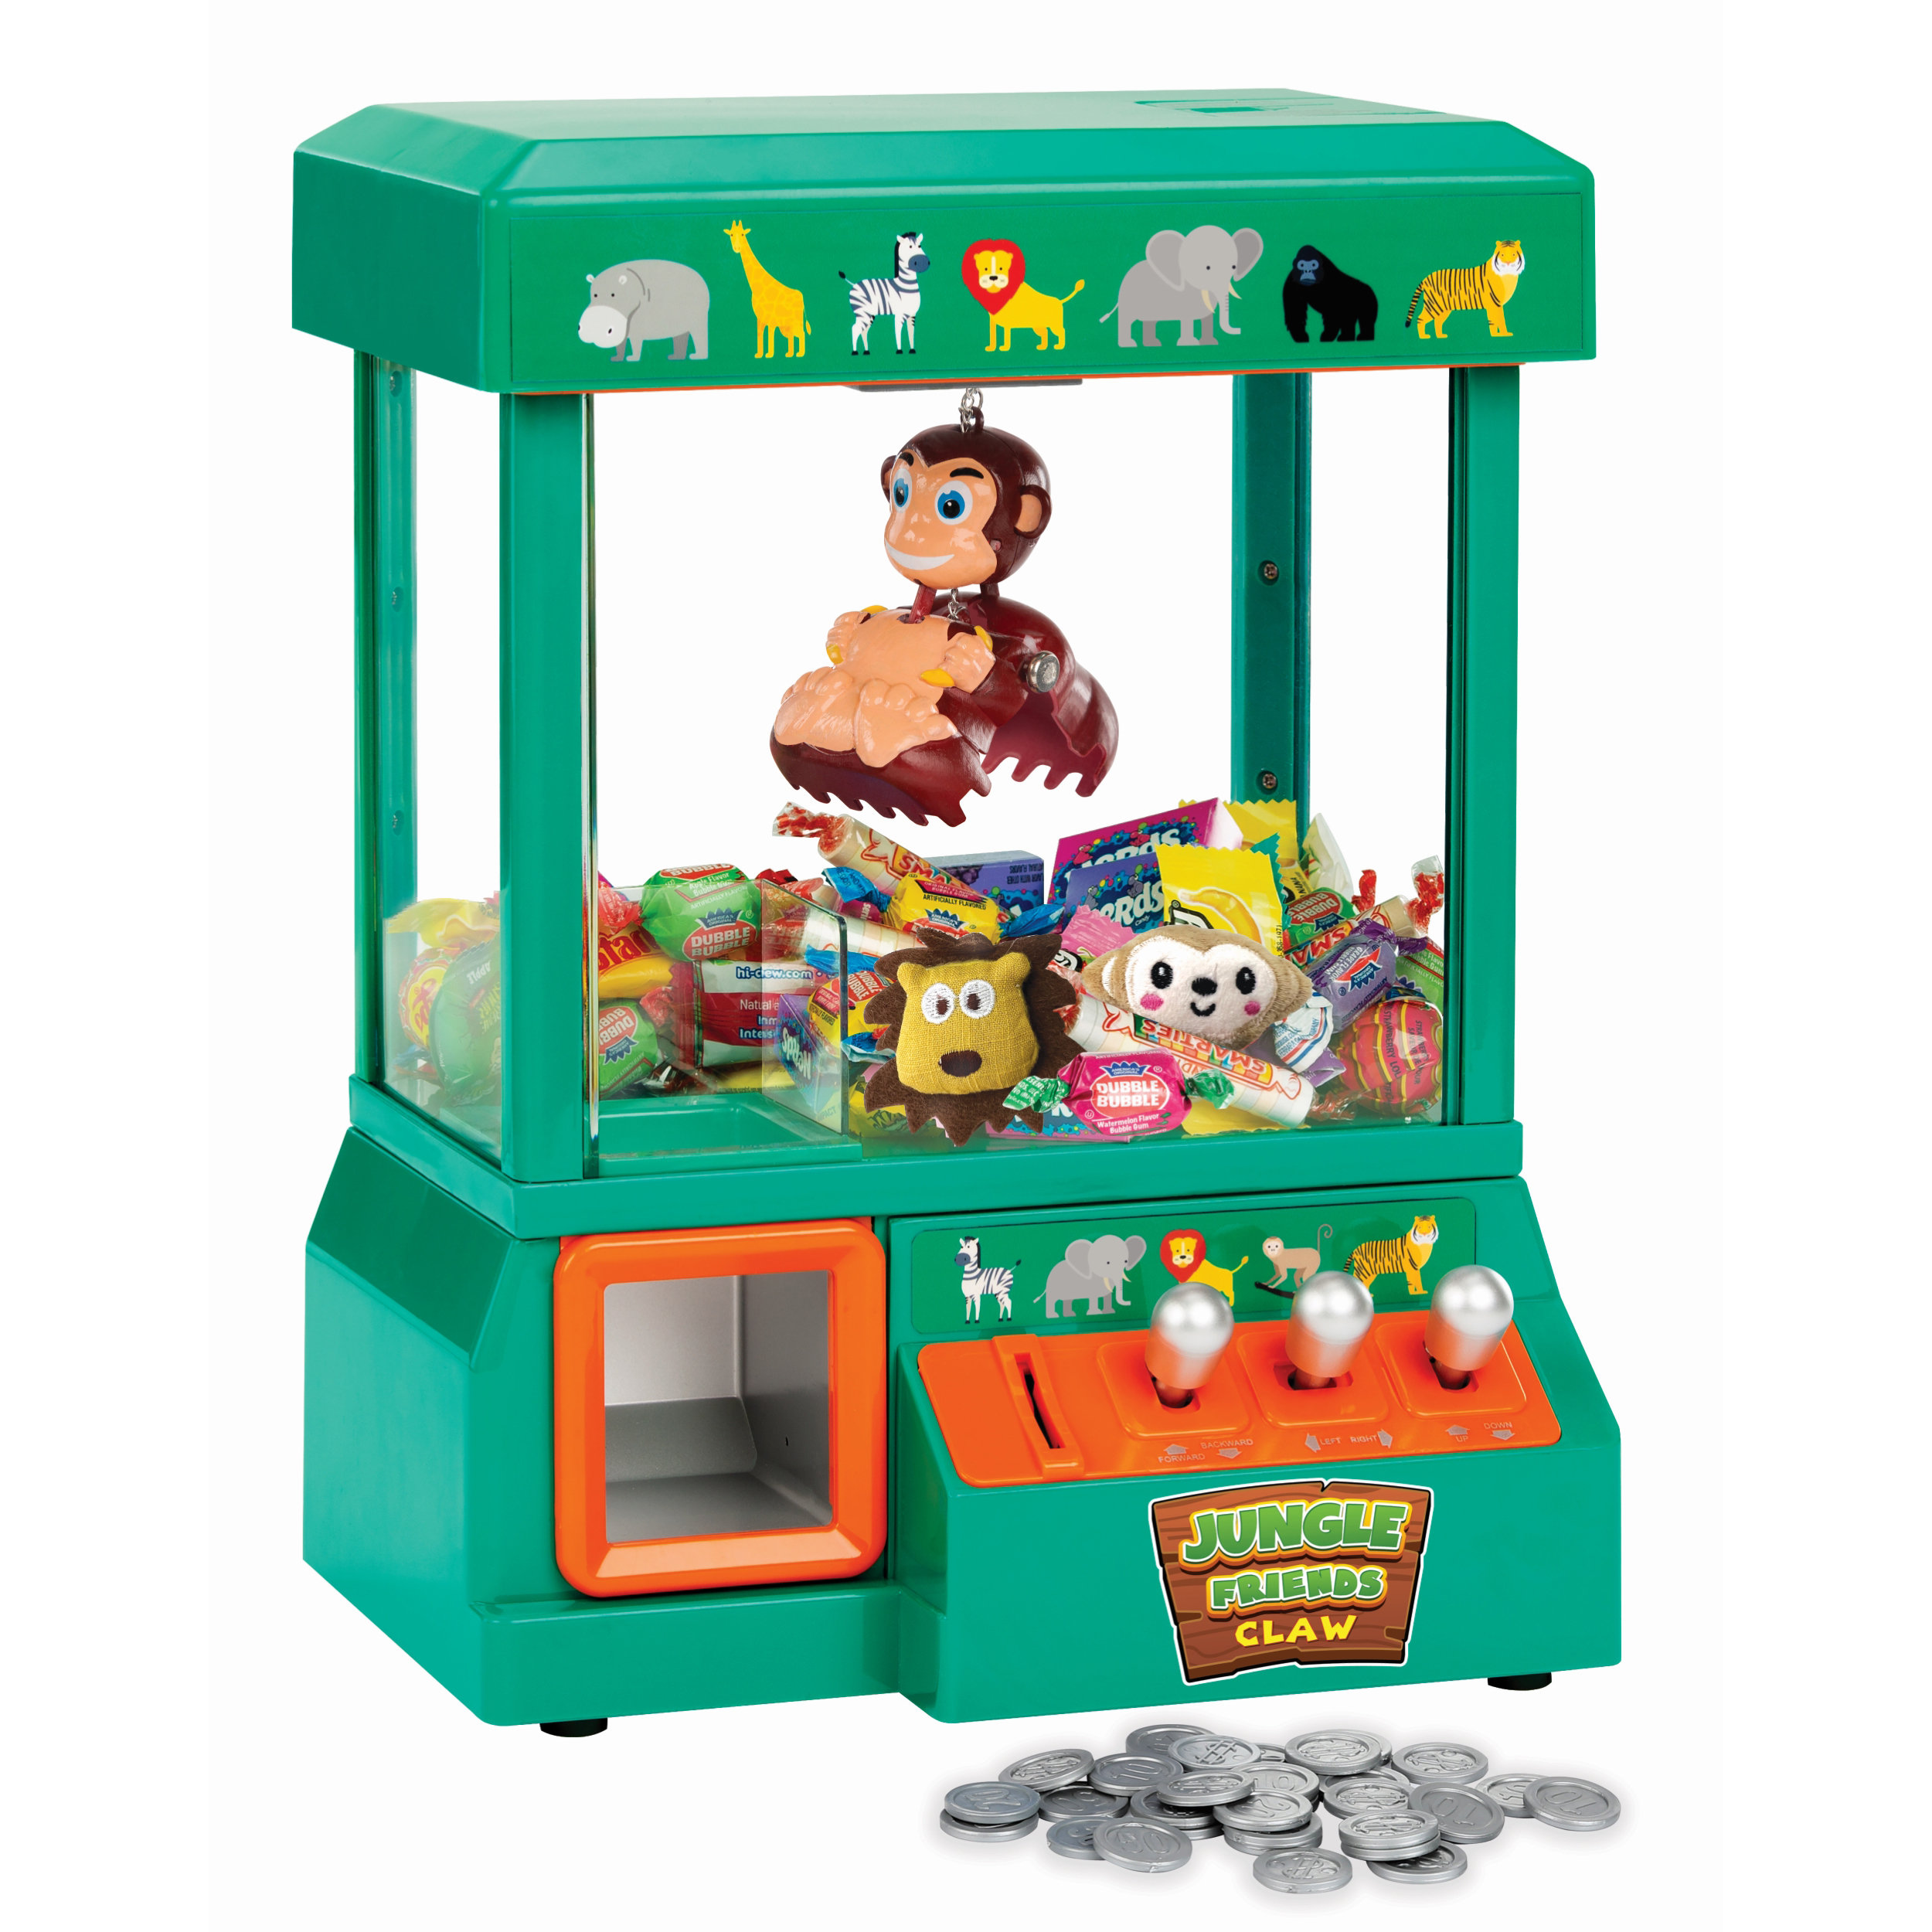 Define Essentials claw machine - arcade mini toy grabber machine